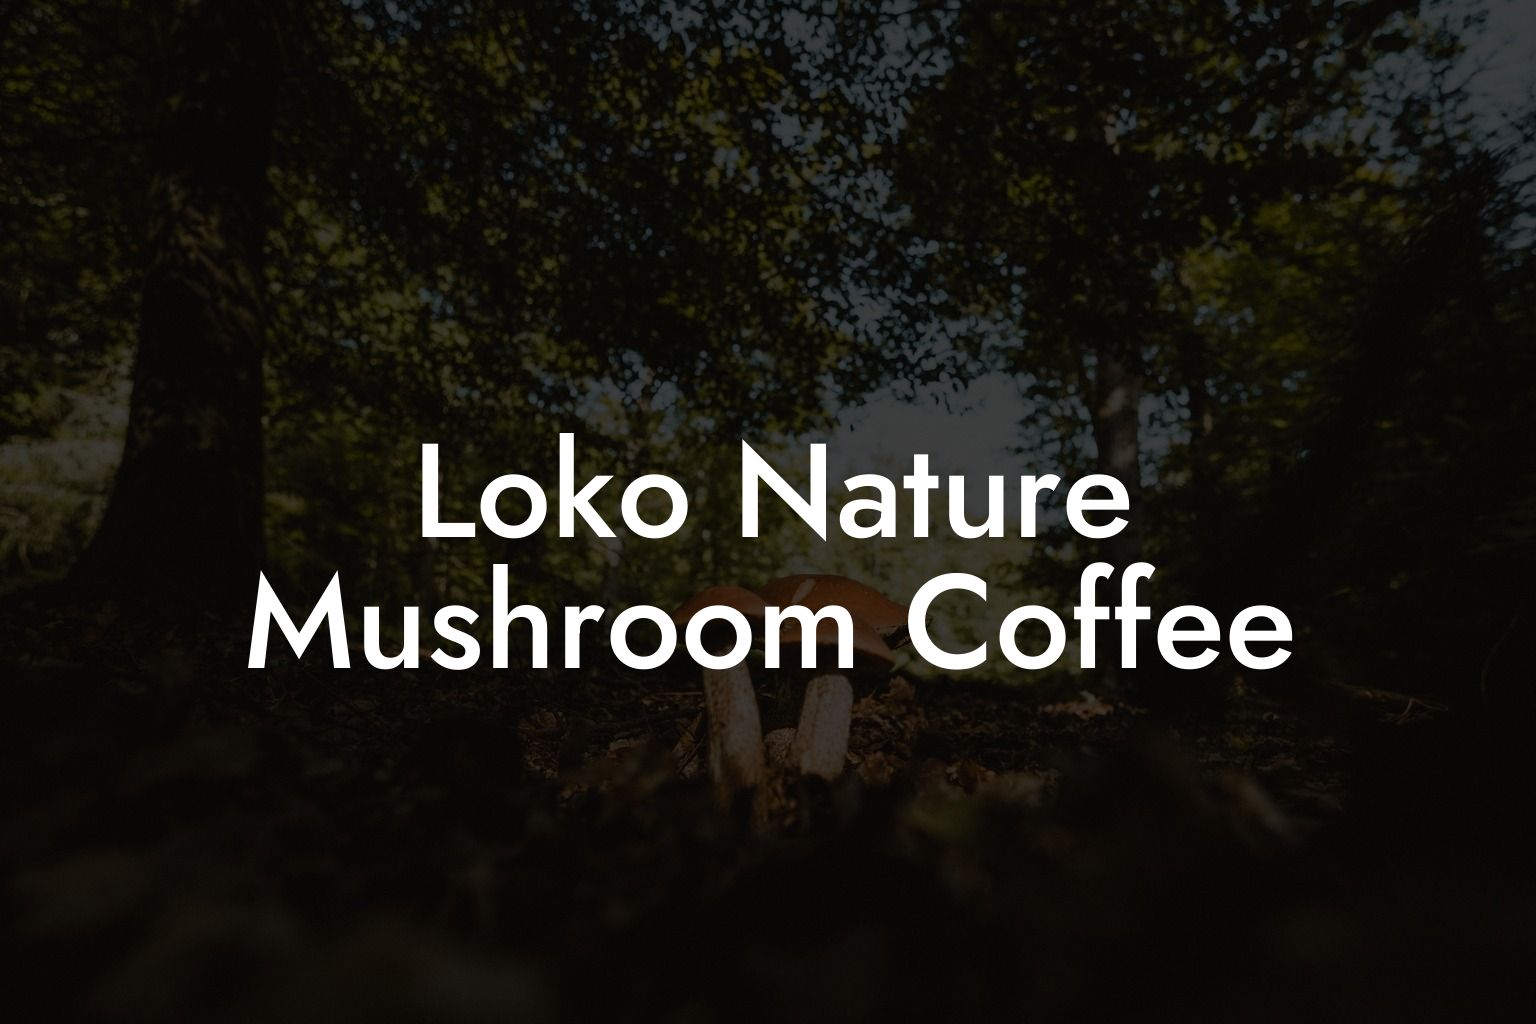 Loko Nature Mushroom Coffee